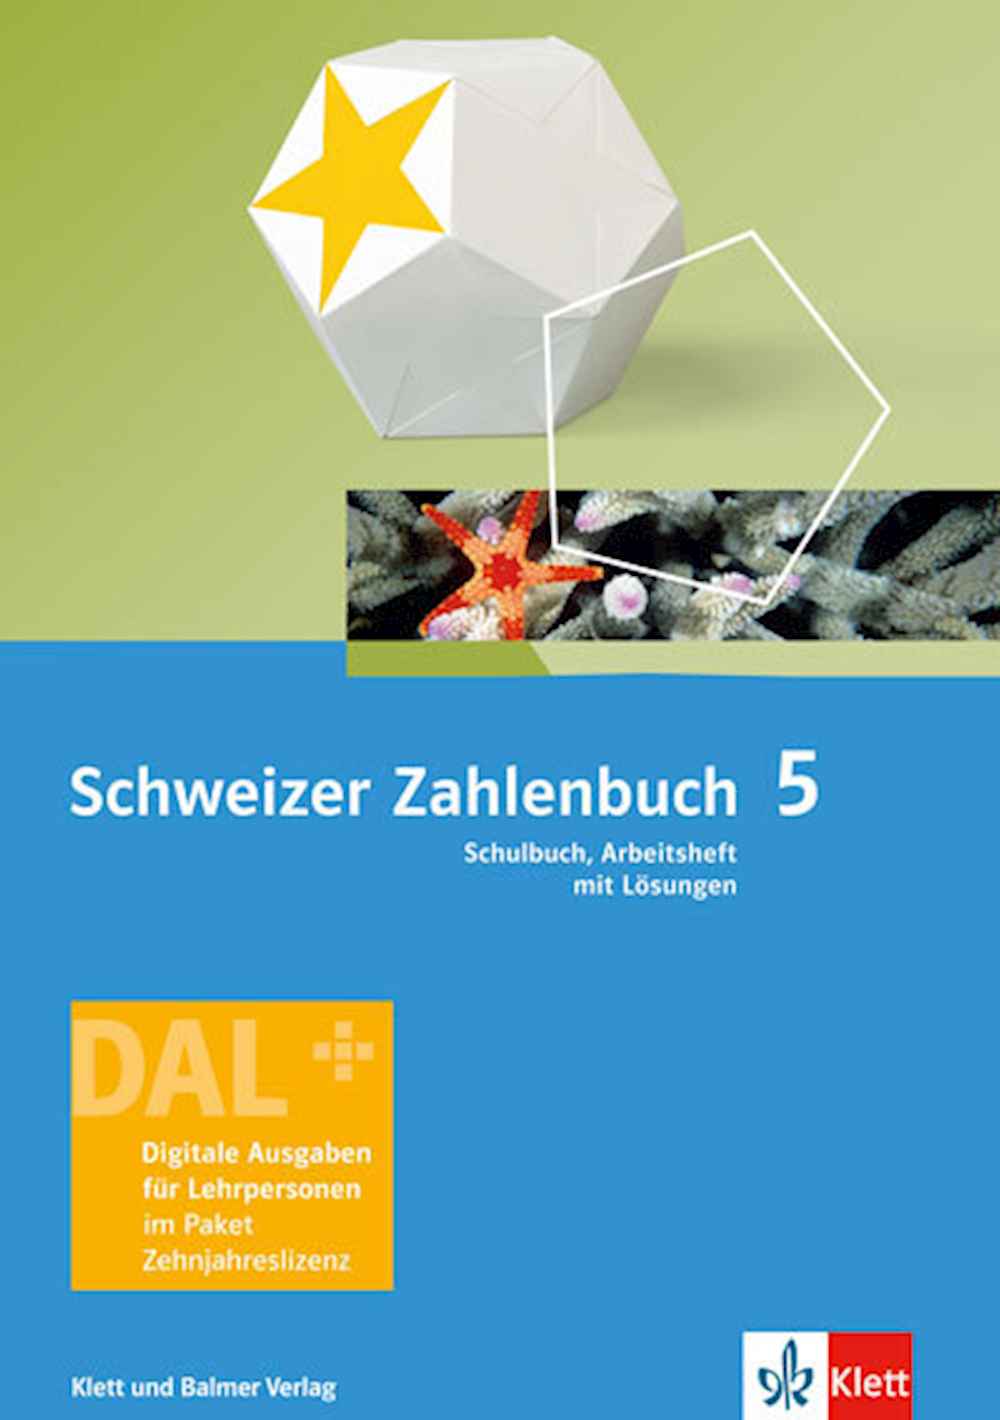 Schweizer Zahlenbuch 5 Neue Ausgabe Digitale Ausga